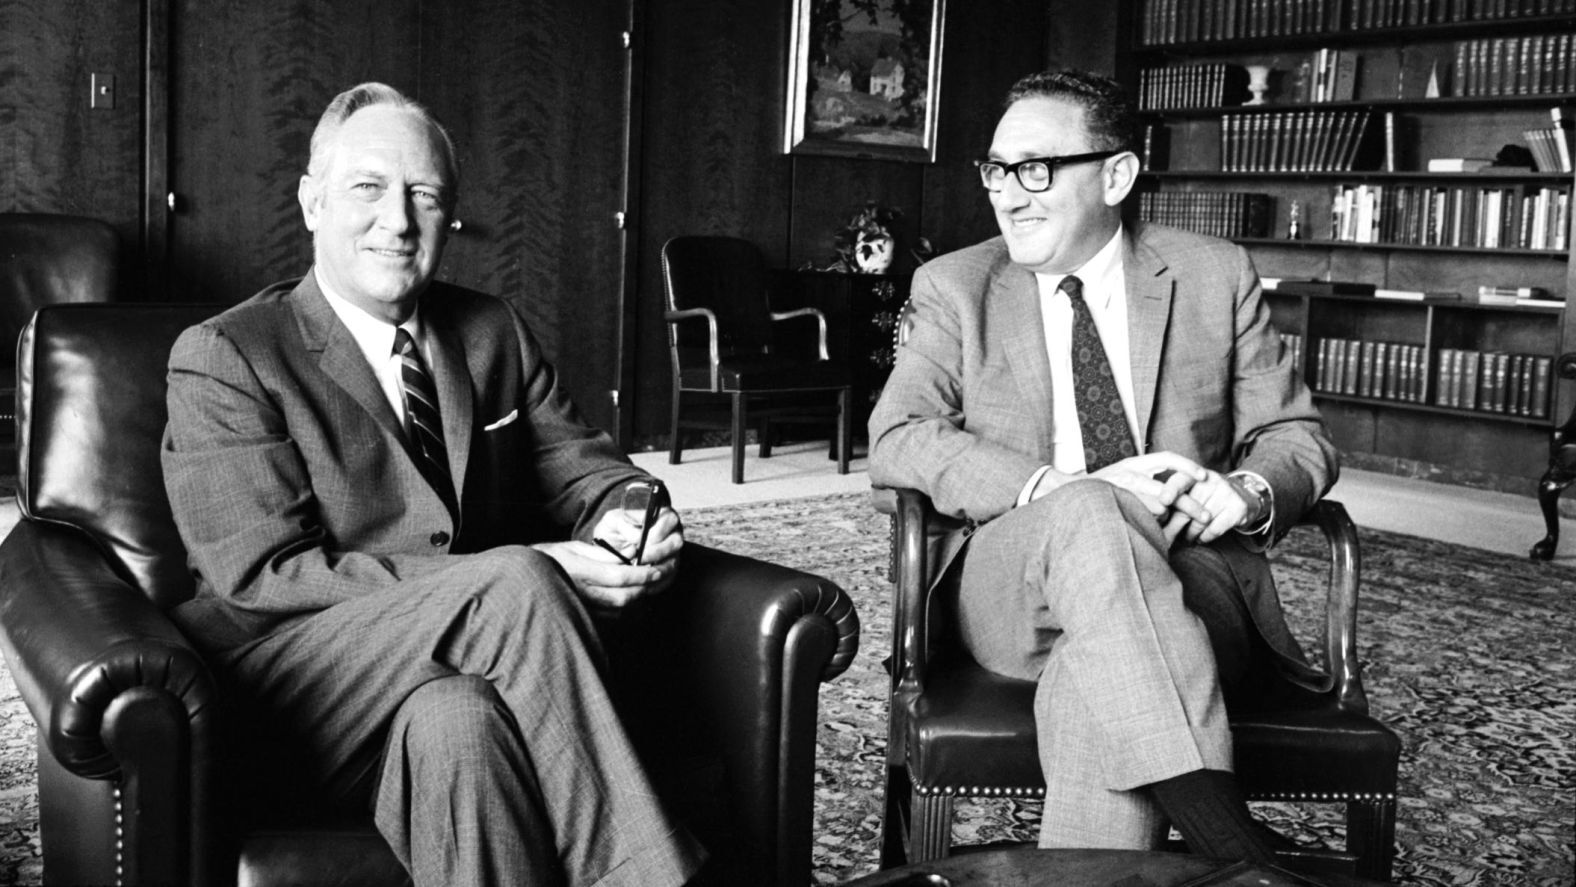 کسینجر به عنوان مشاور امنیت ملی در کنار ویلیام راجرز وزیر خارجه در سال 1969